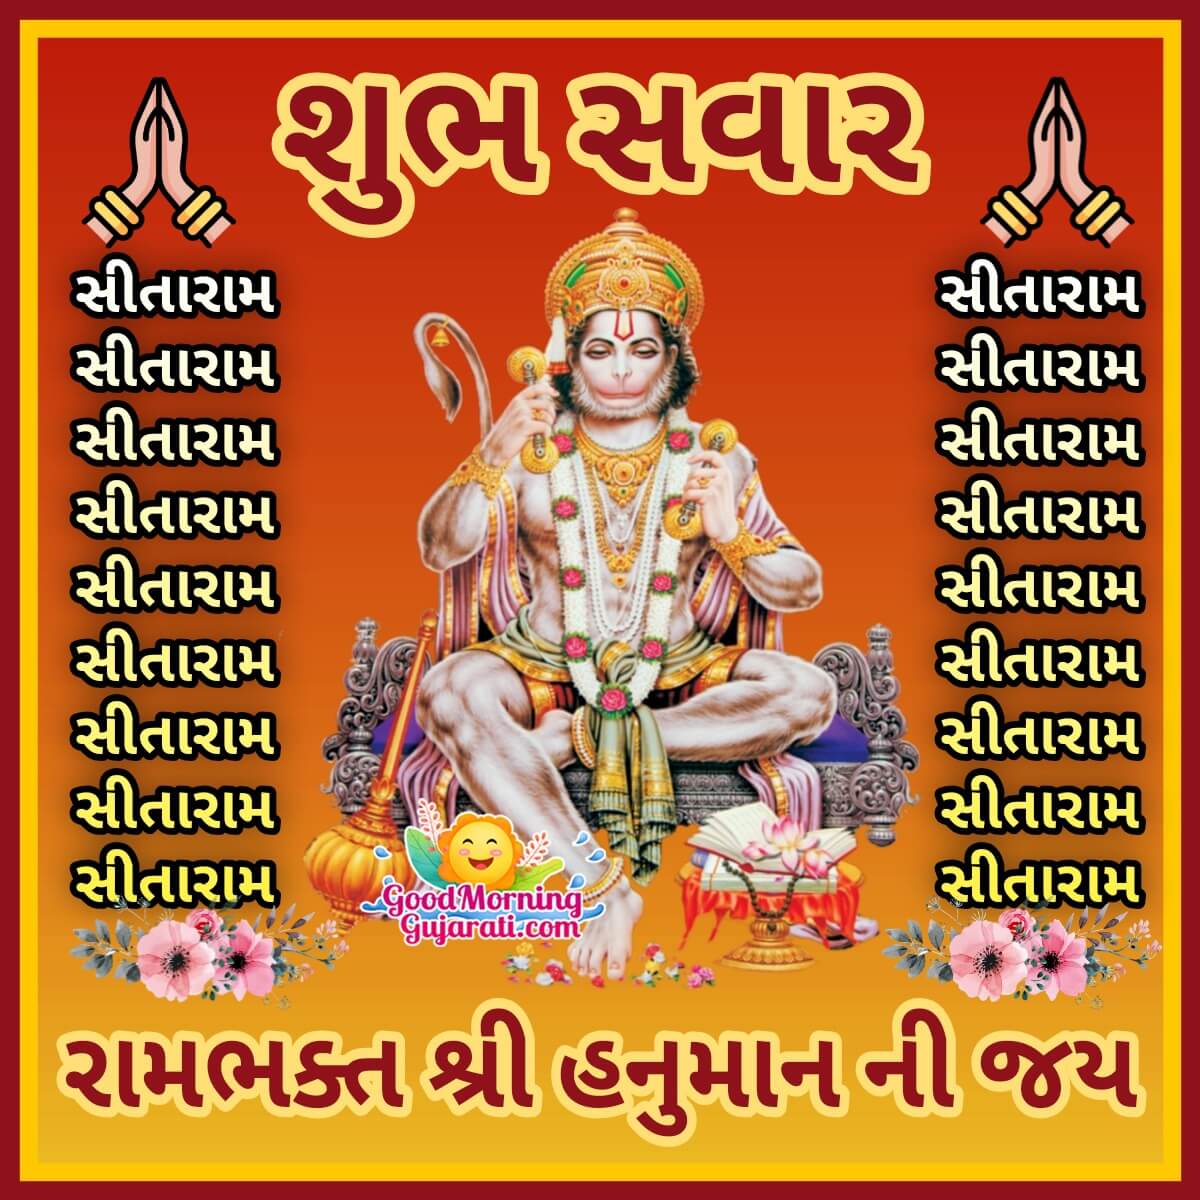 Shubh Savar Shri Hanuman Ni Jai